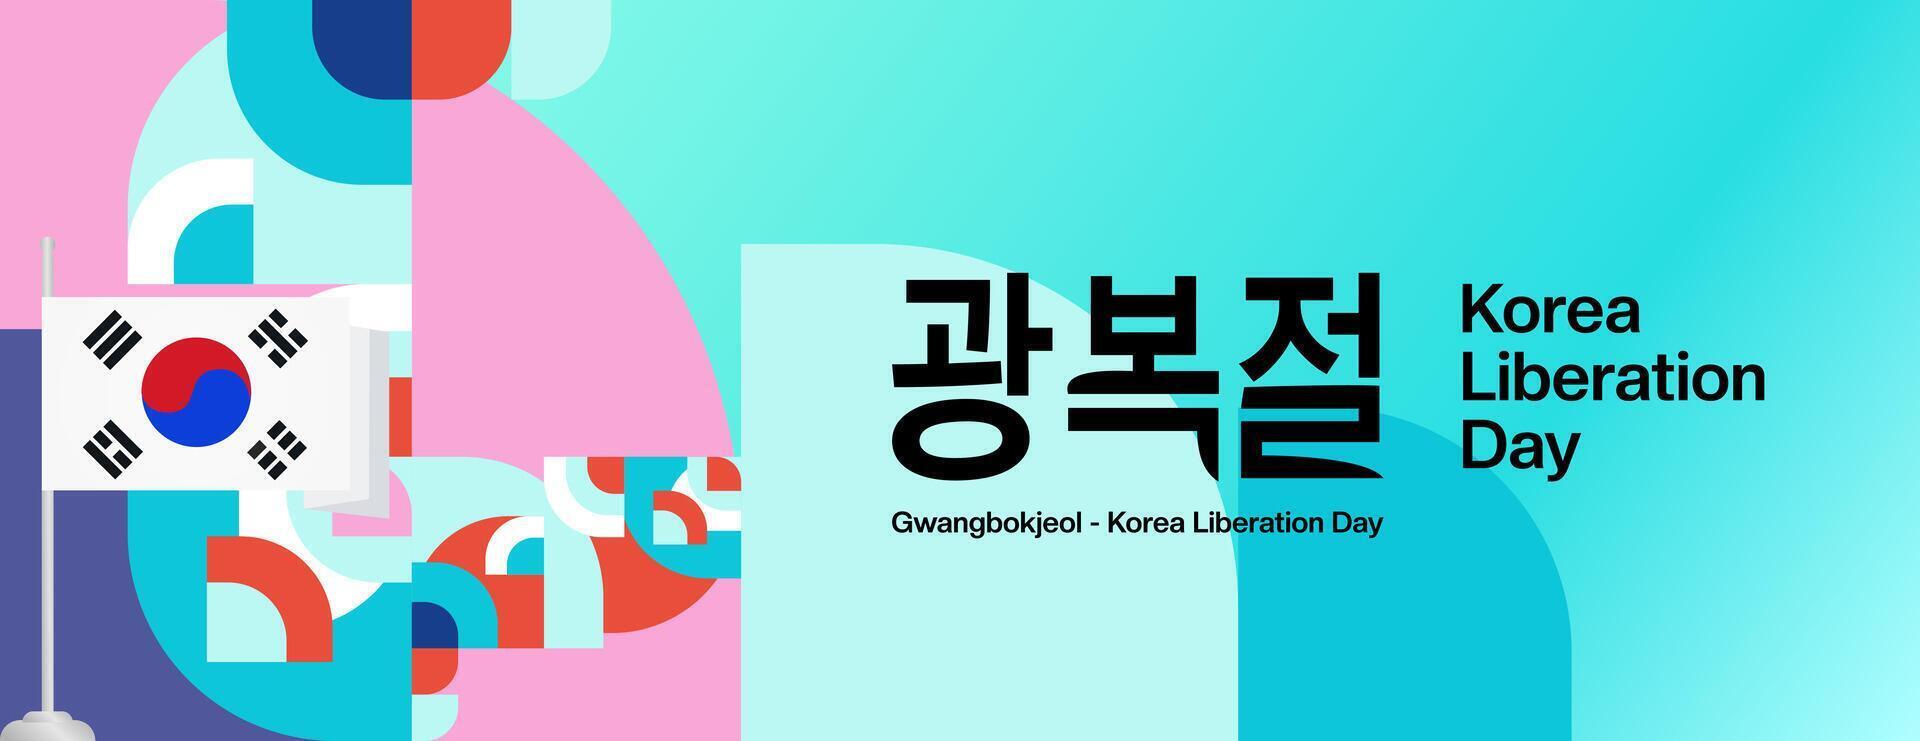 Korea National Befreiung Tag breit Banner im bunt modern geometrisch Stil. glücklich gwangbokjeol Tag ist Süd Koreanisch Unabhängigkeit Tag. Vektor Illustration zum National Urlaub feiern